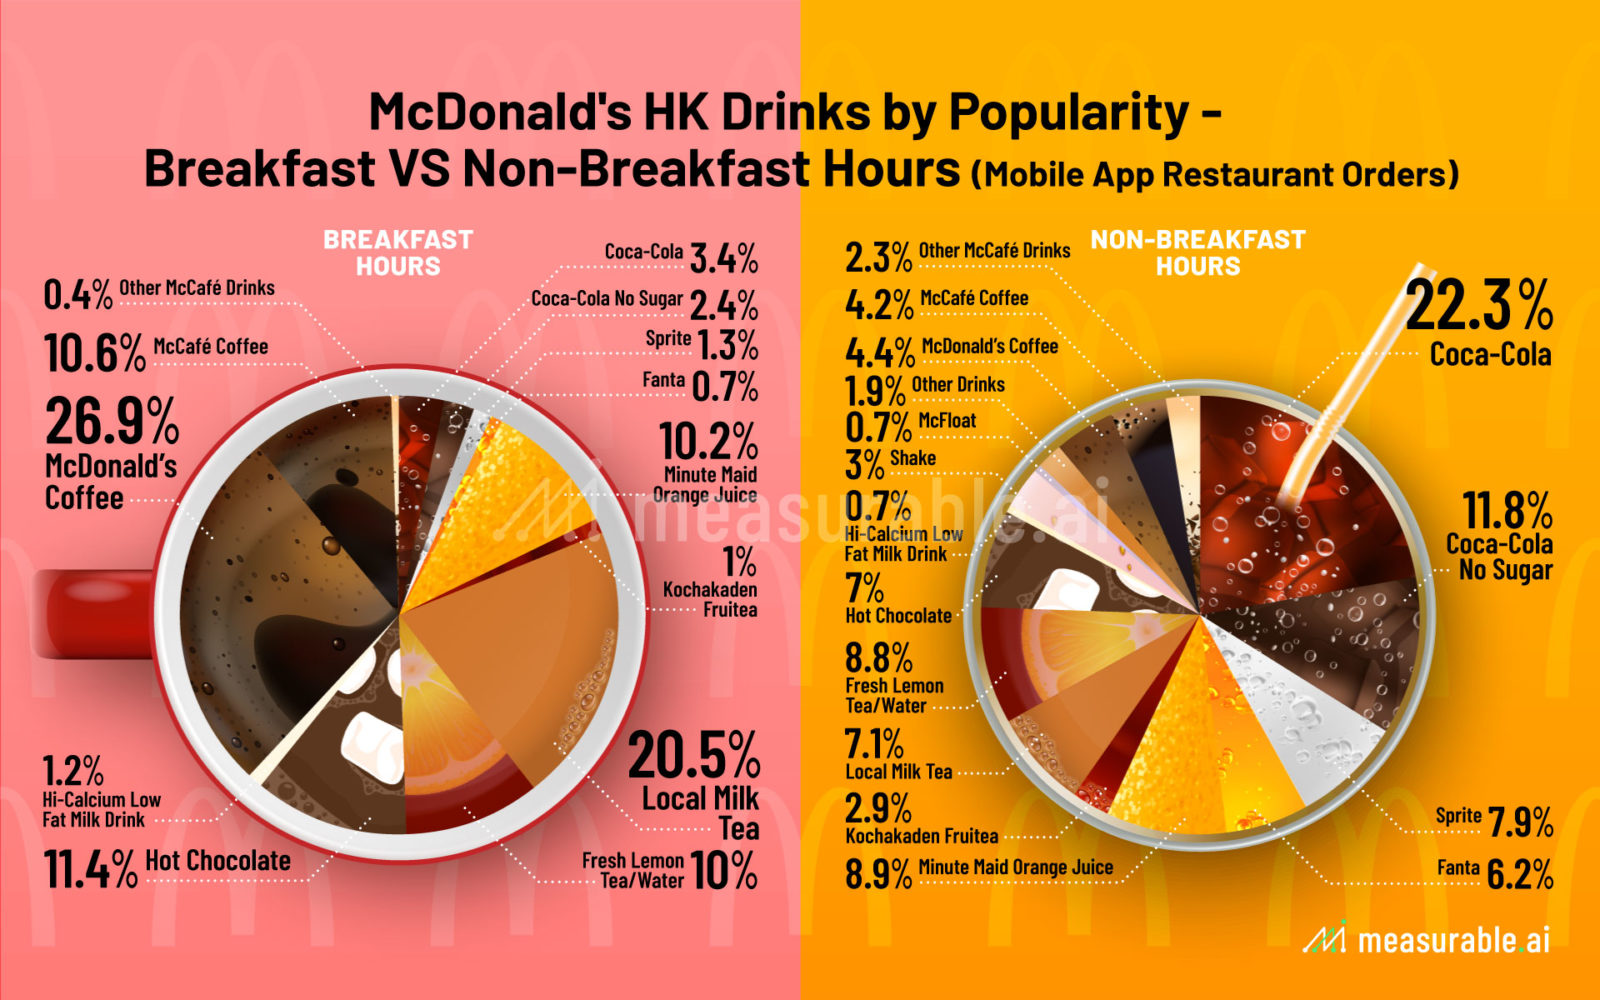 McDonald's HK Drinks by Popularity - Breakfast VS Non-Breakfast Hours